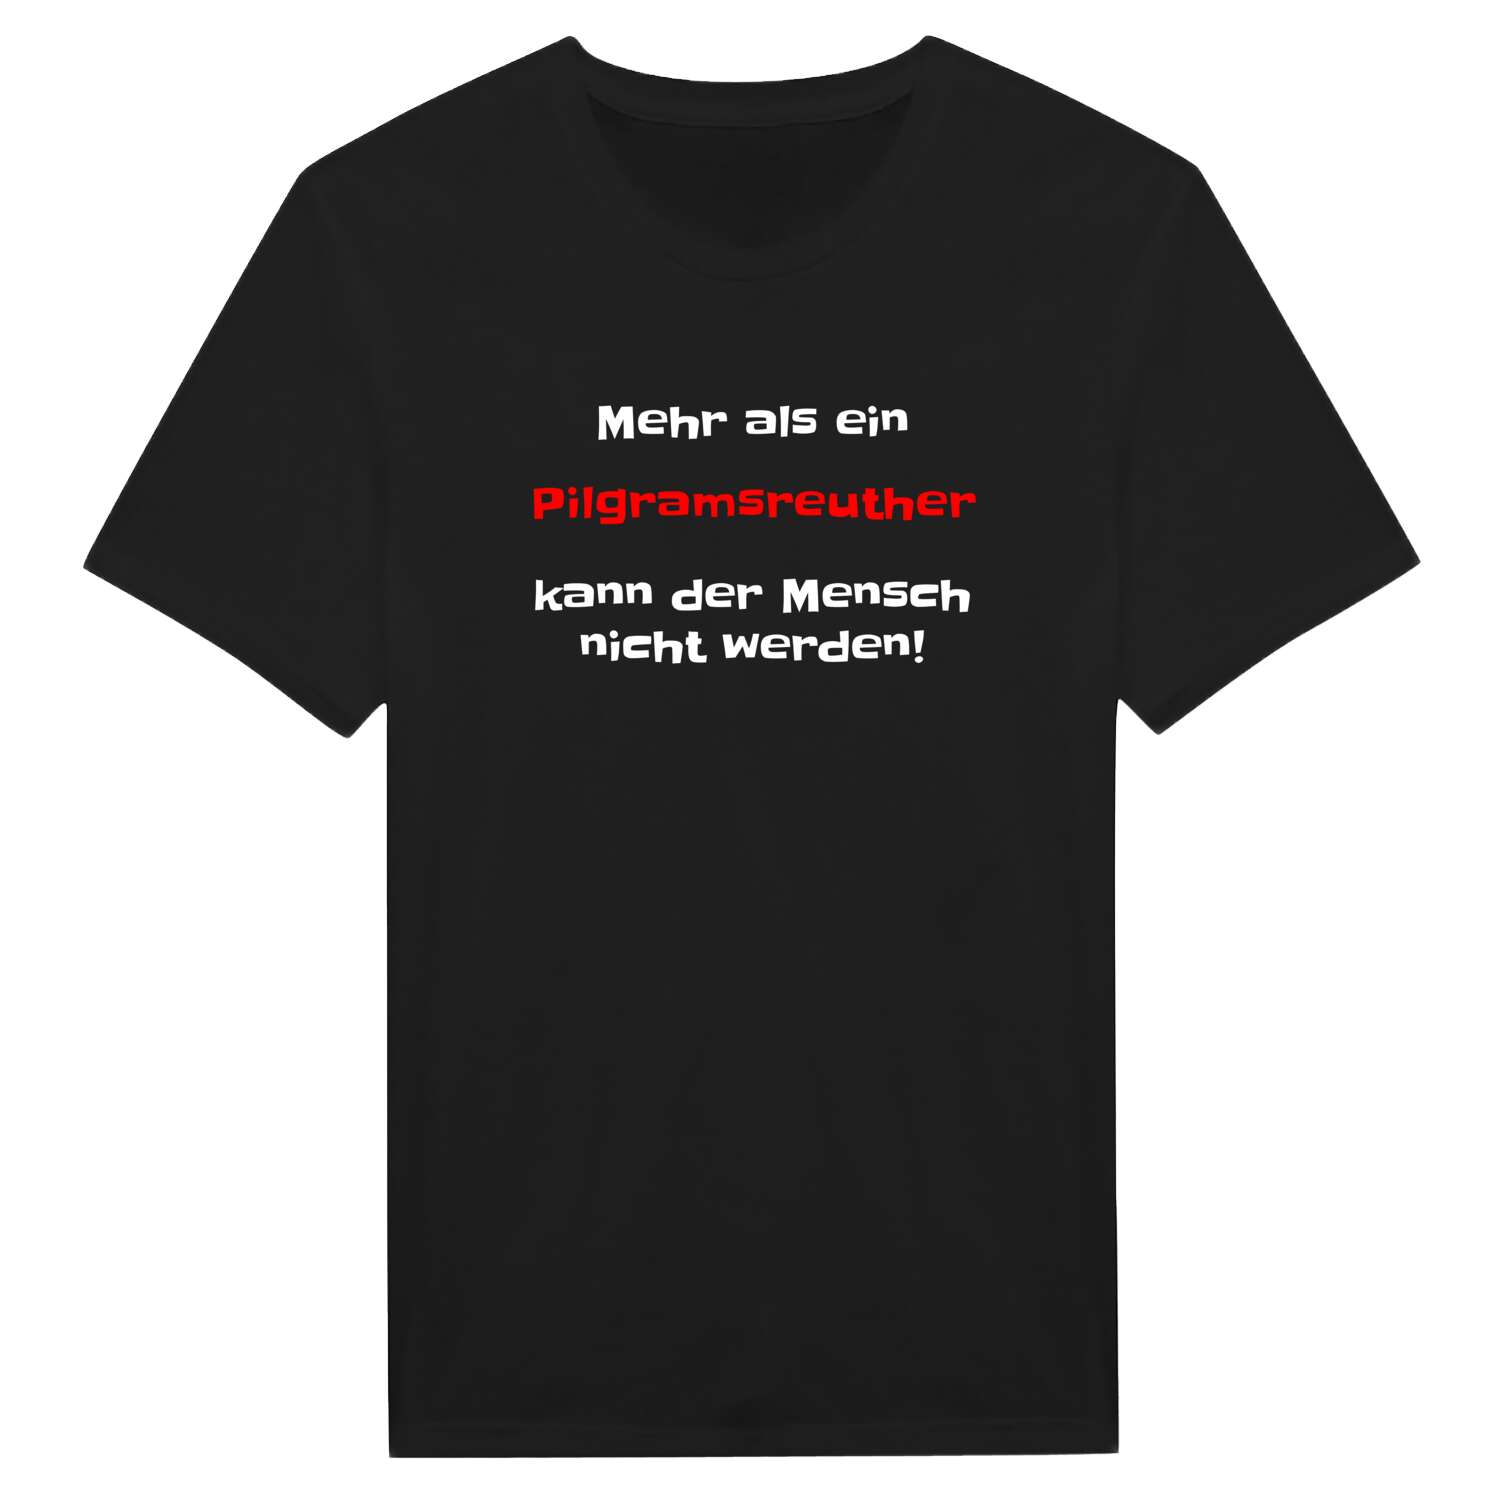 Pilgramsreuth T-Shirt »Mehr als ein«